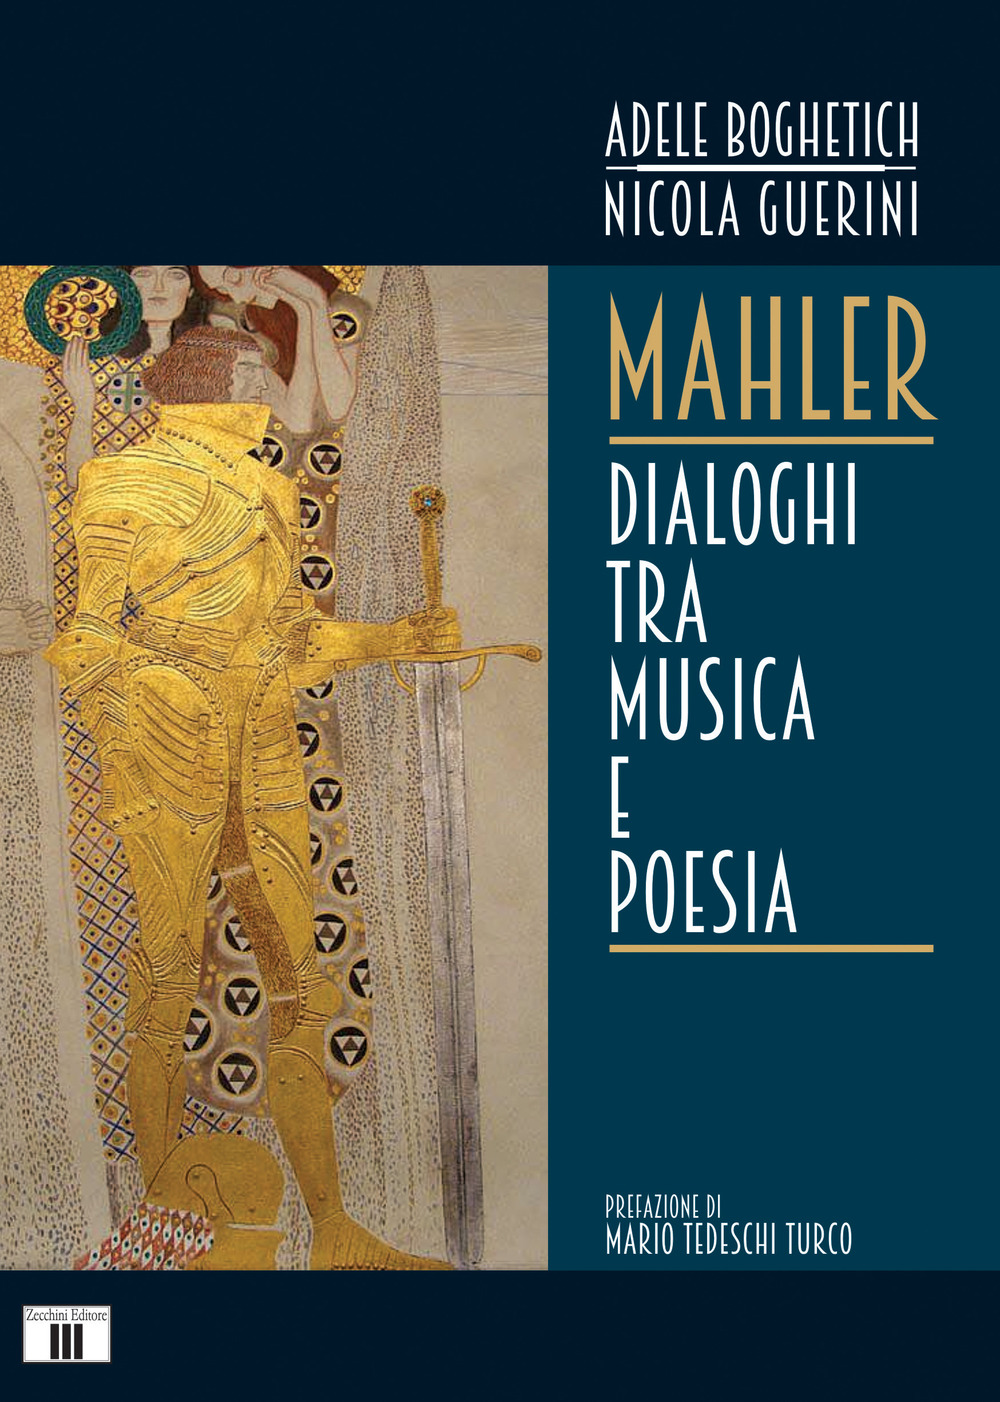 Libri Adele Boghetich / Nicola Guerini - Mahler. Dialoghi Tra Musica E Poesia NUOVO SIGILLATO, EDIZIONE DEL 12/04/2021 SUBITO DISPONIBILE